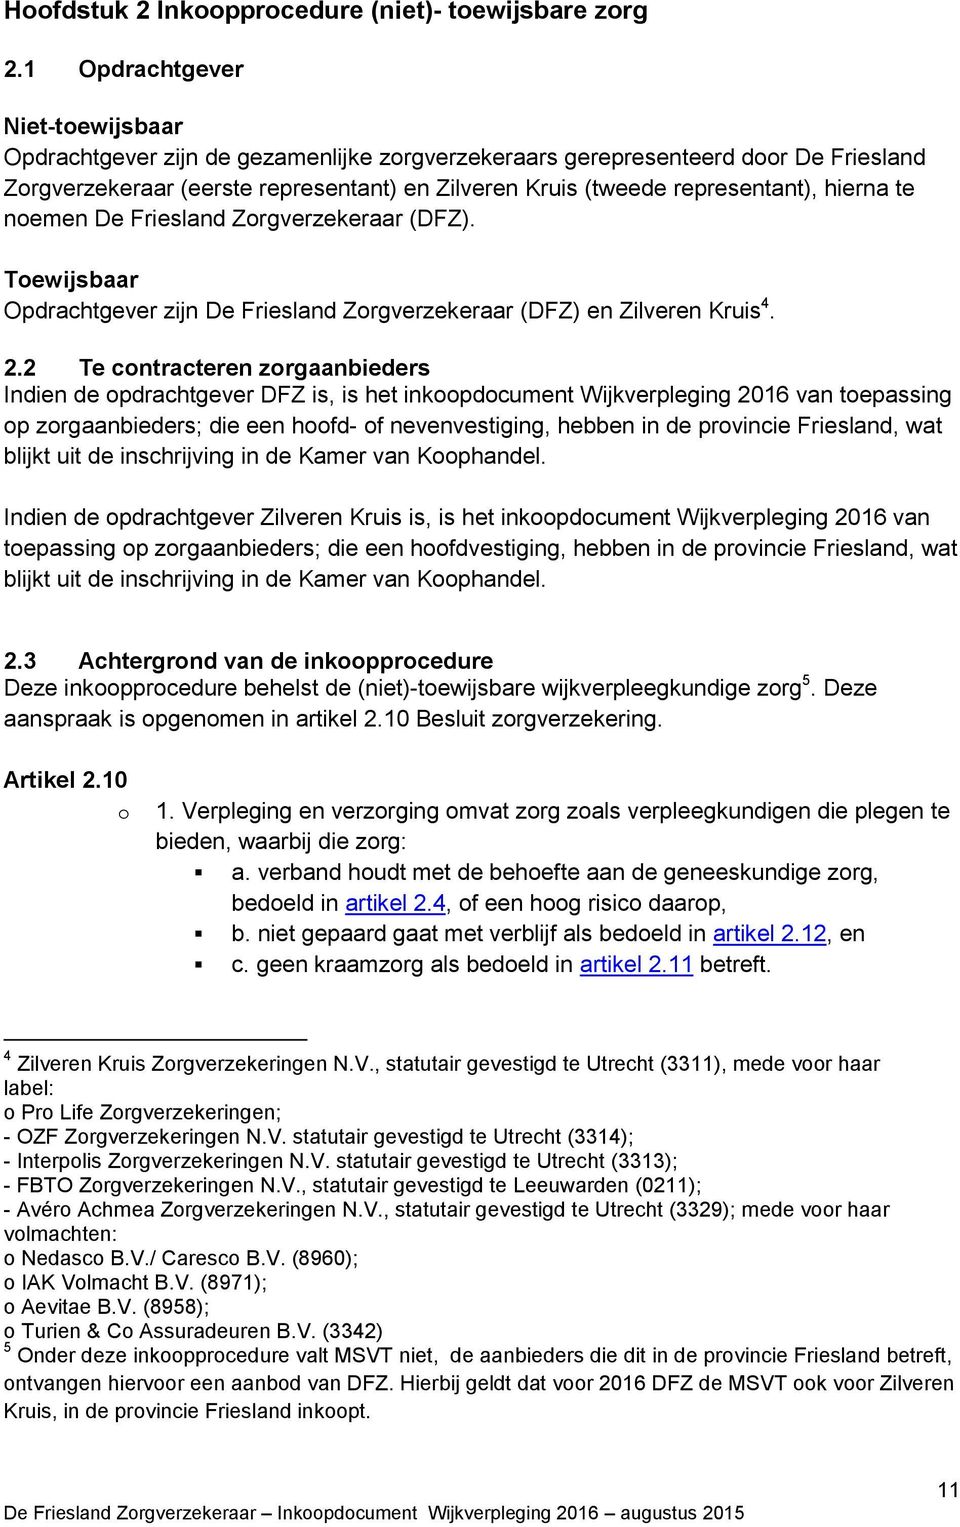 hierna te noemen De Friesland Zorgverzekeraar (DFZ). Toewijsbaar Opdrachtgever zijn De Friesland Zorgverzekeraar (DFZ) en Zilveren Kruis 4. 2.